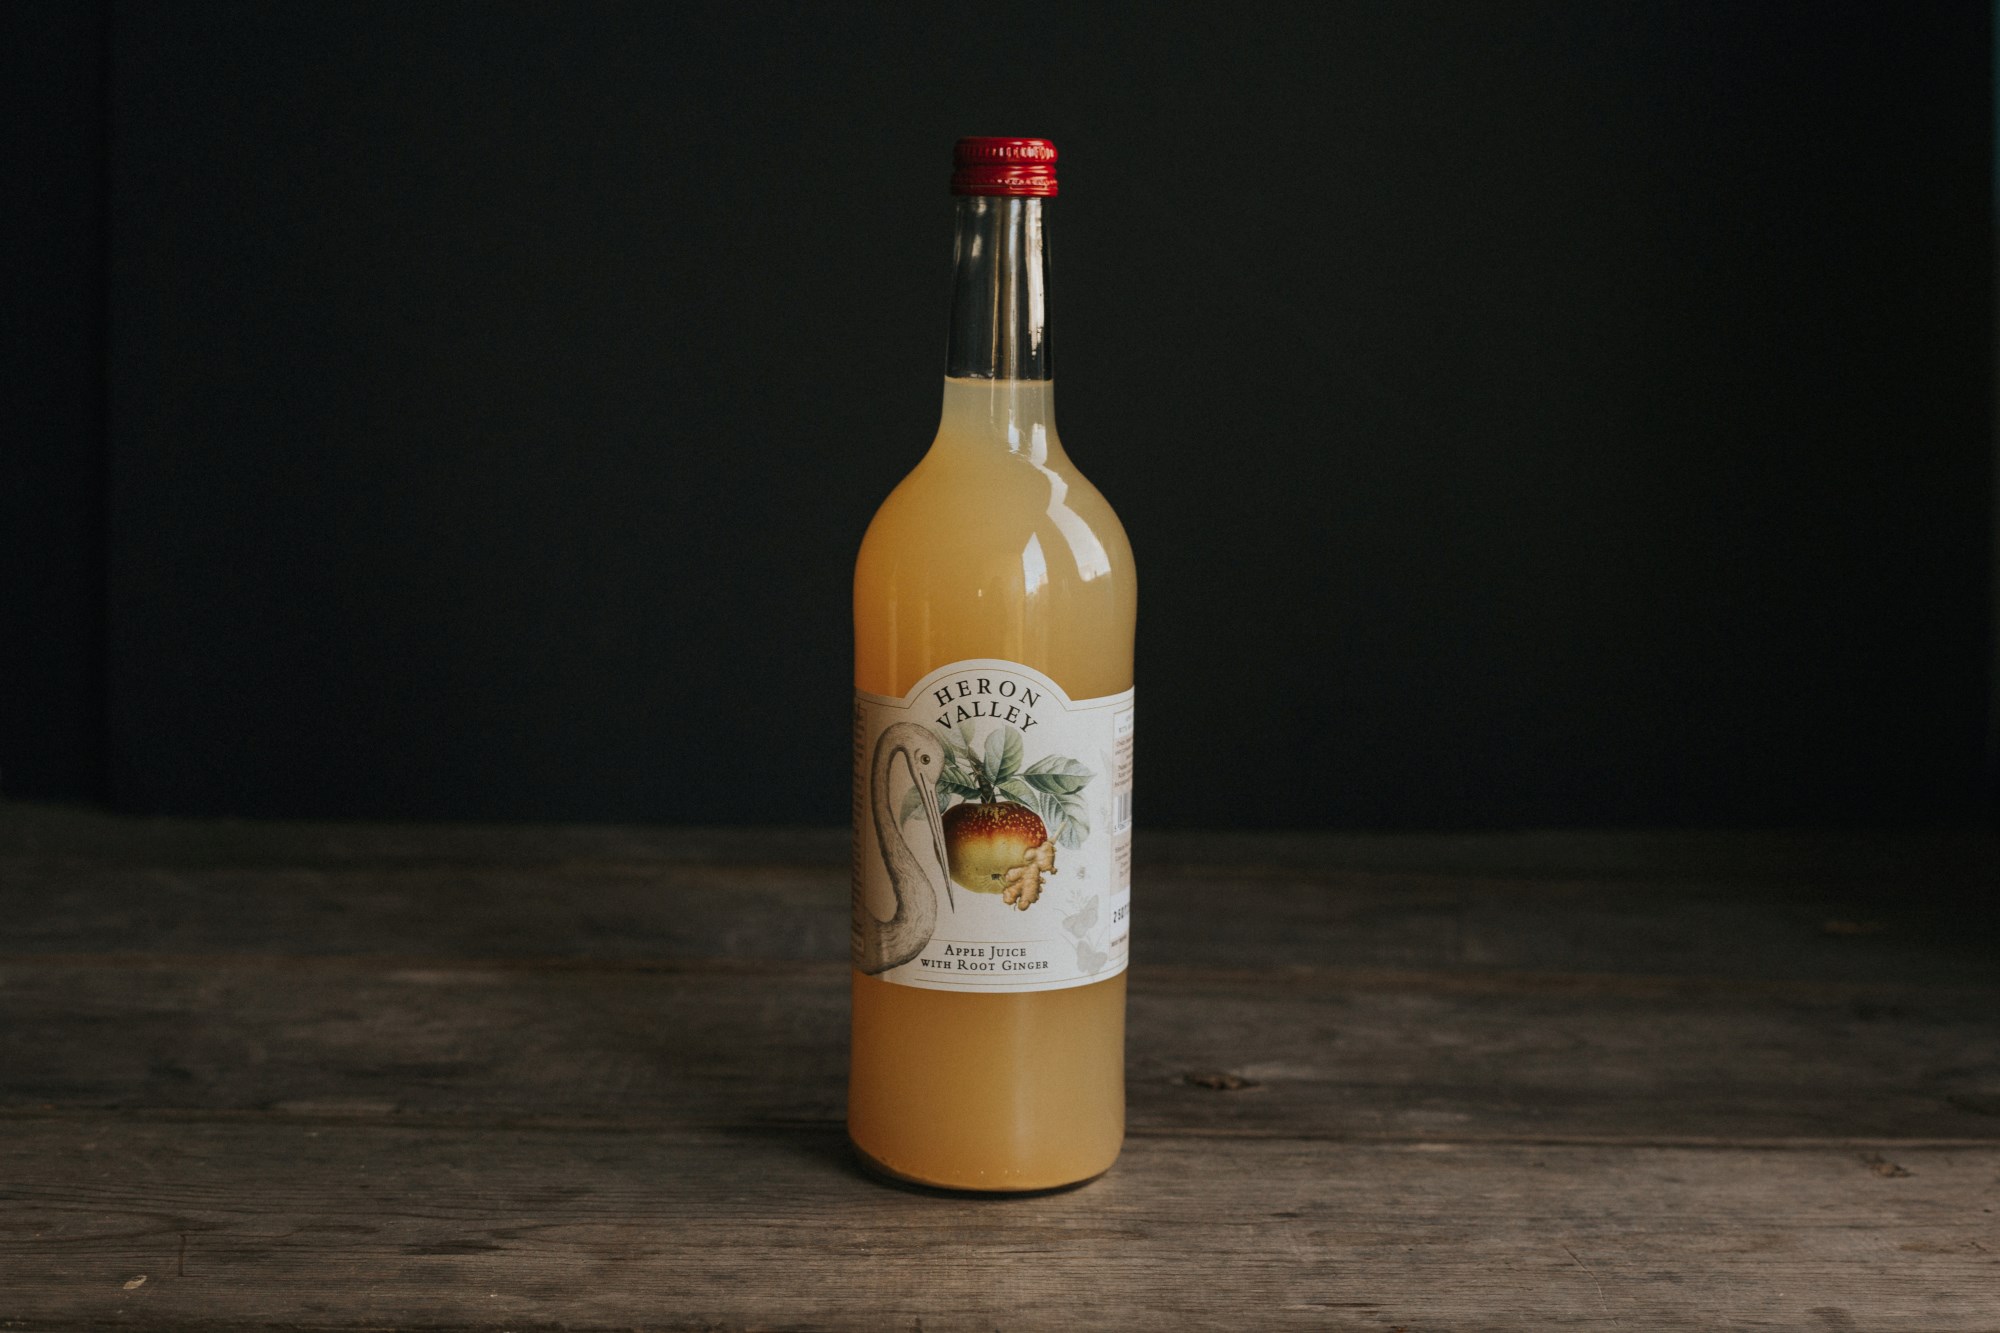 Heron Valley Pear & Apple Juice - 750ml